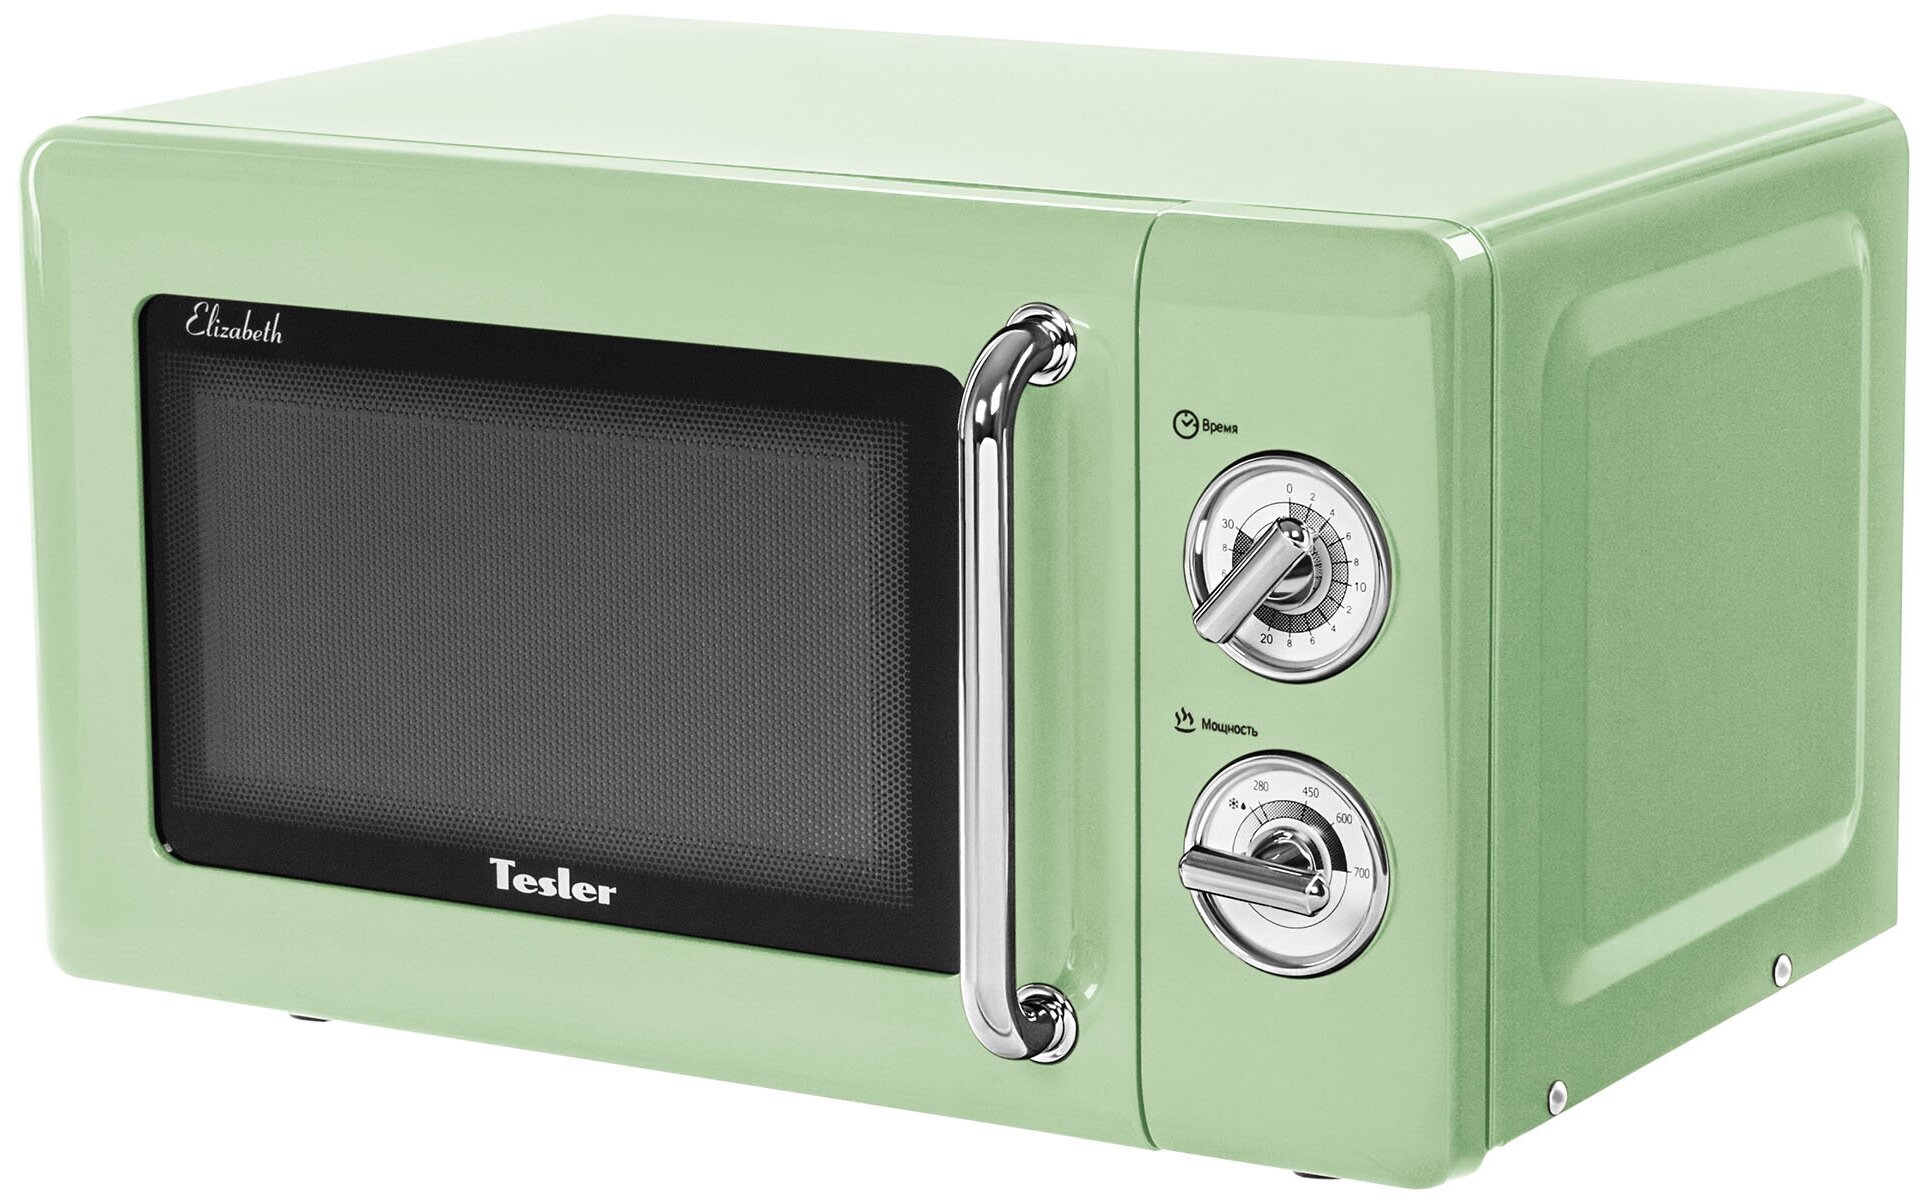 Микроволновая печь TESLER MM-2045 GREEN — купить в интернет-магазине по низкой цене на Яндекс Маркете